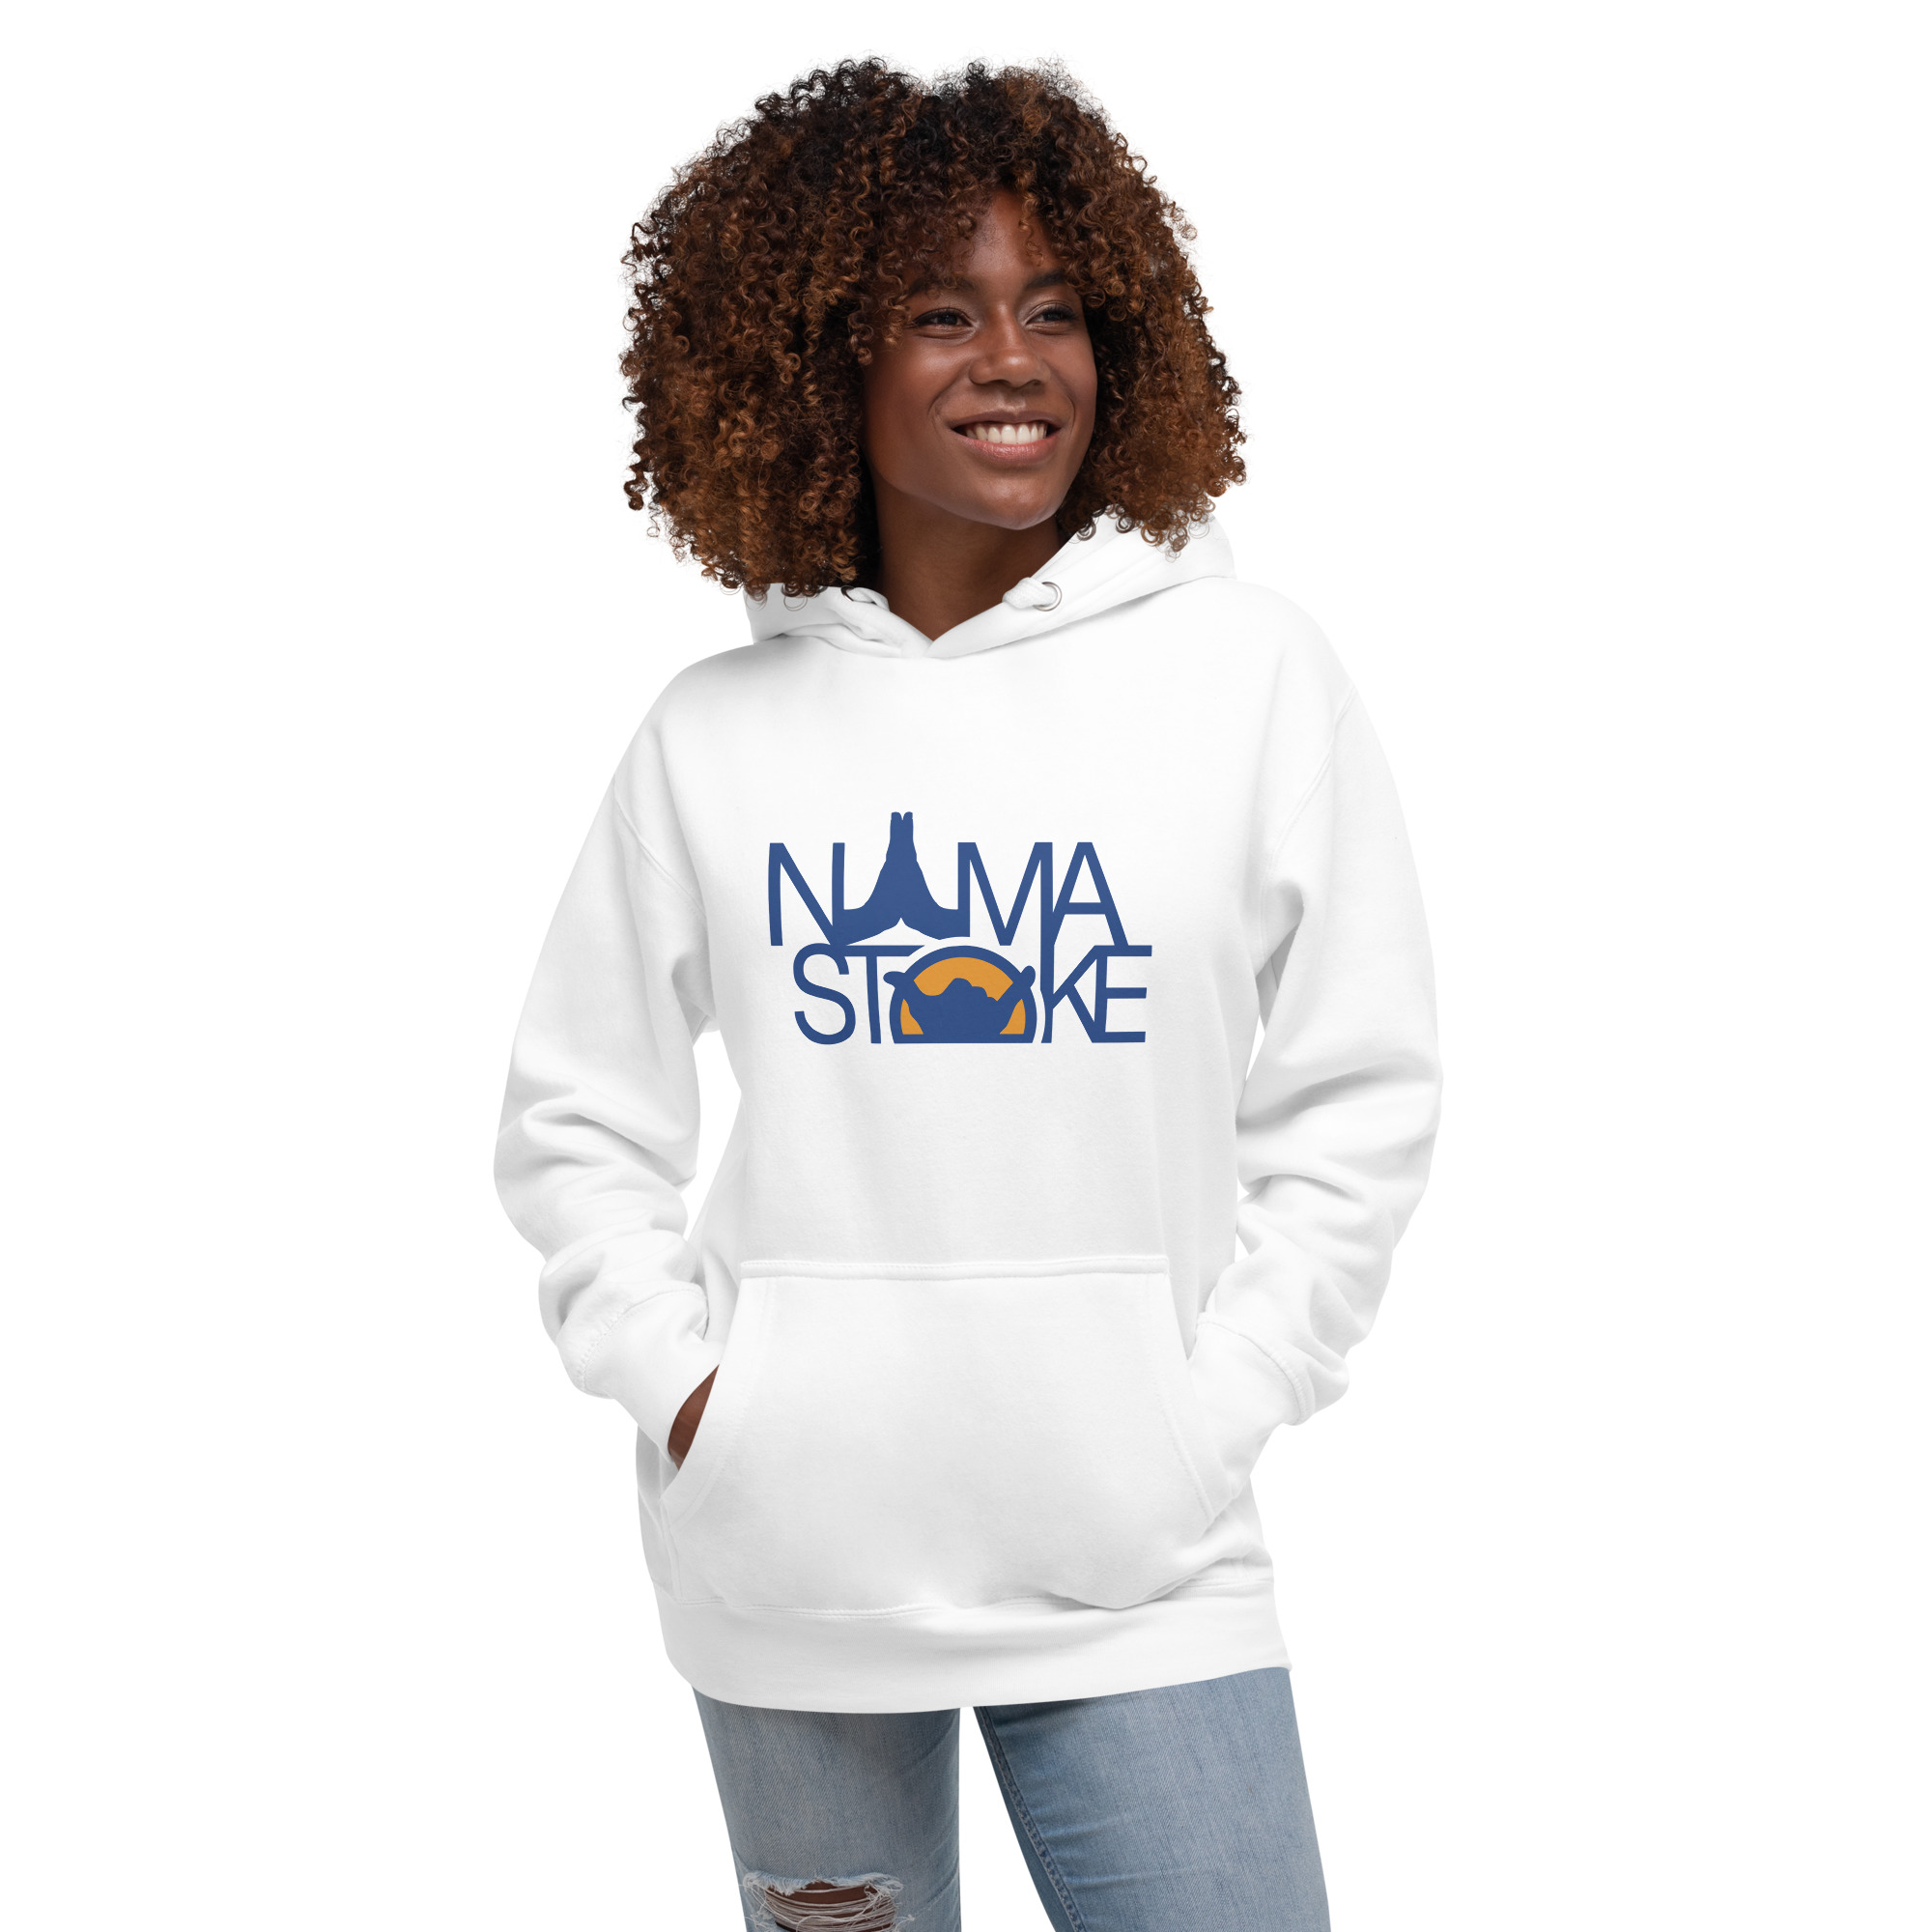 Unisex fashion hoodie - Namaste - comes in two colors – vantorik